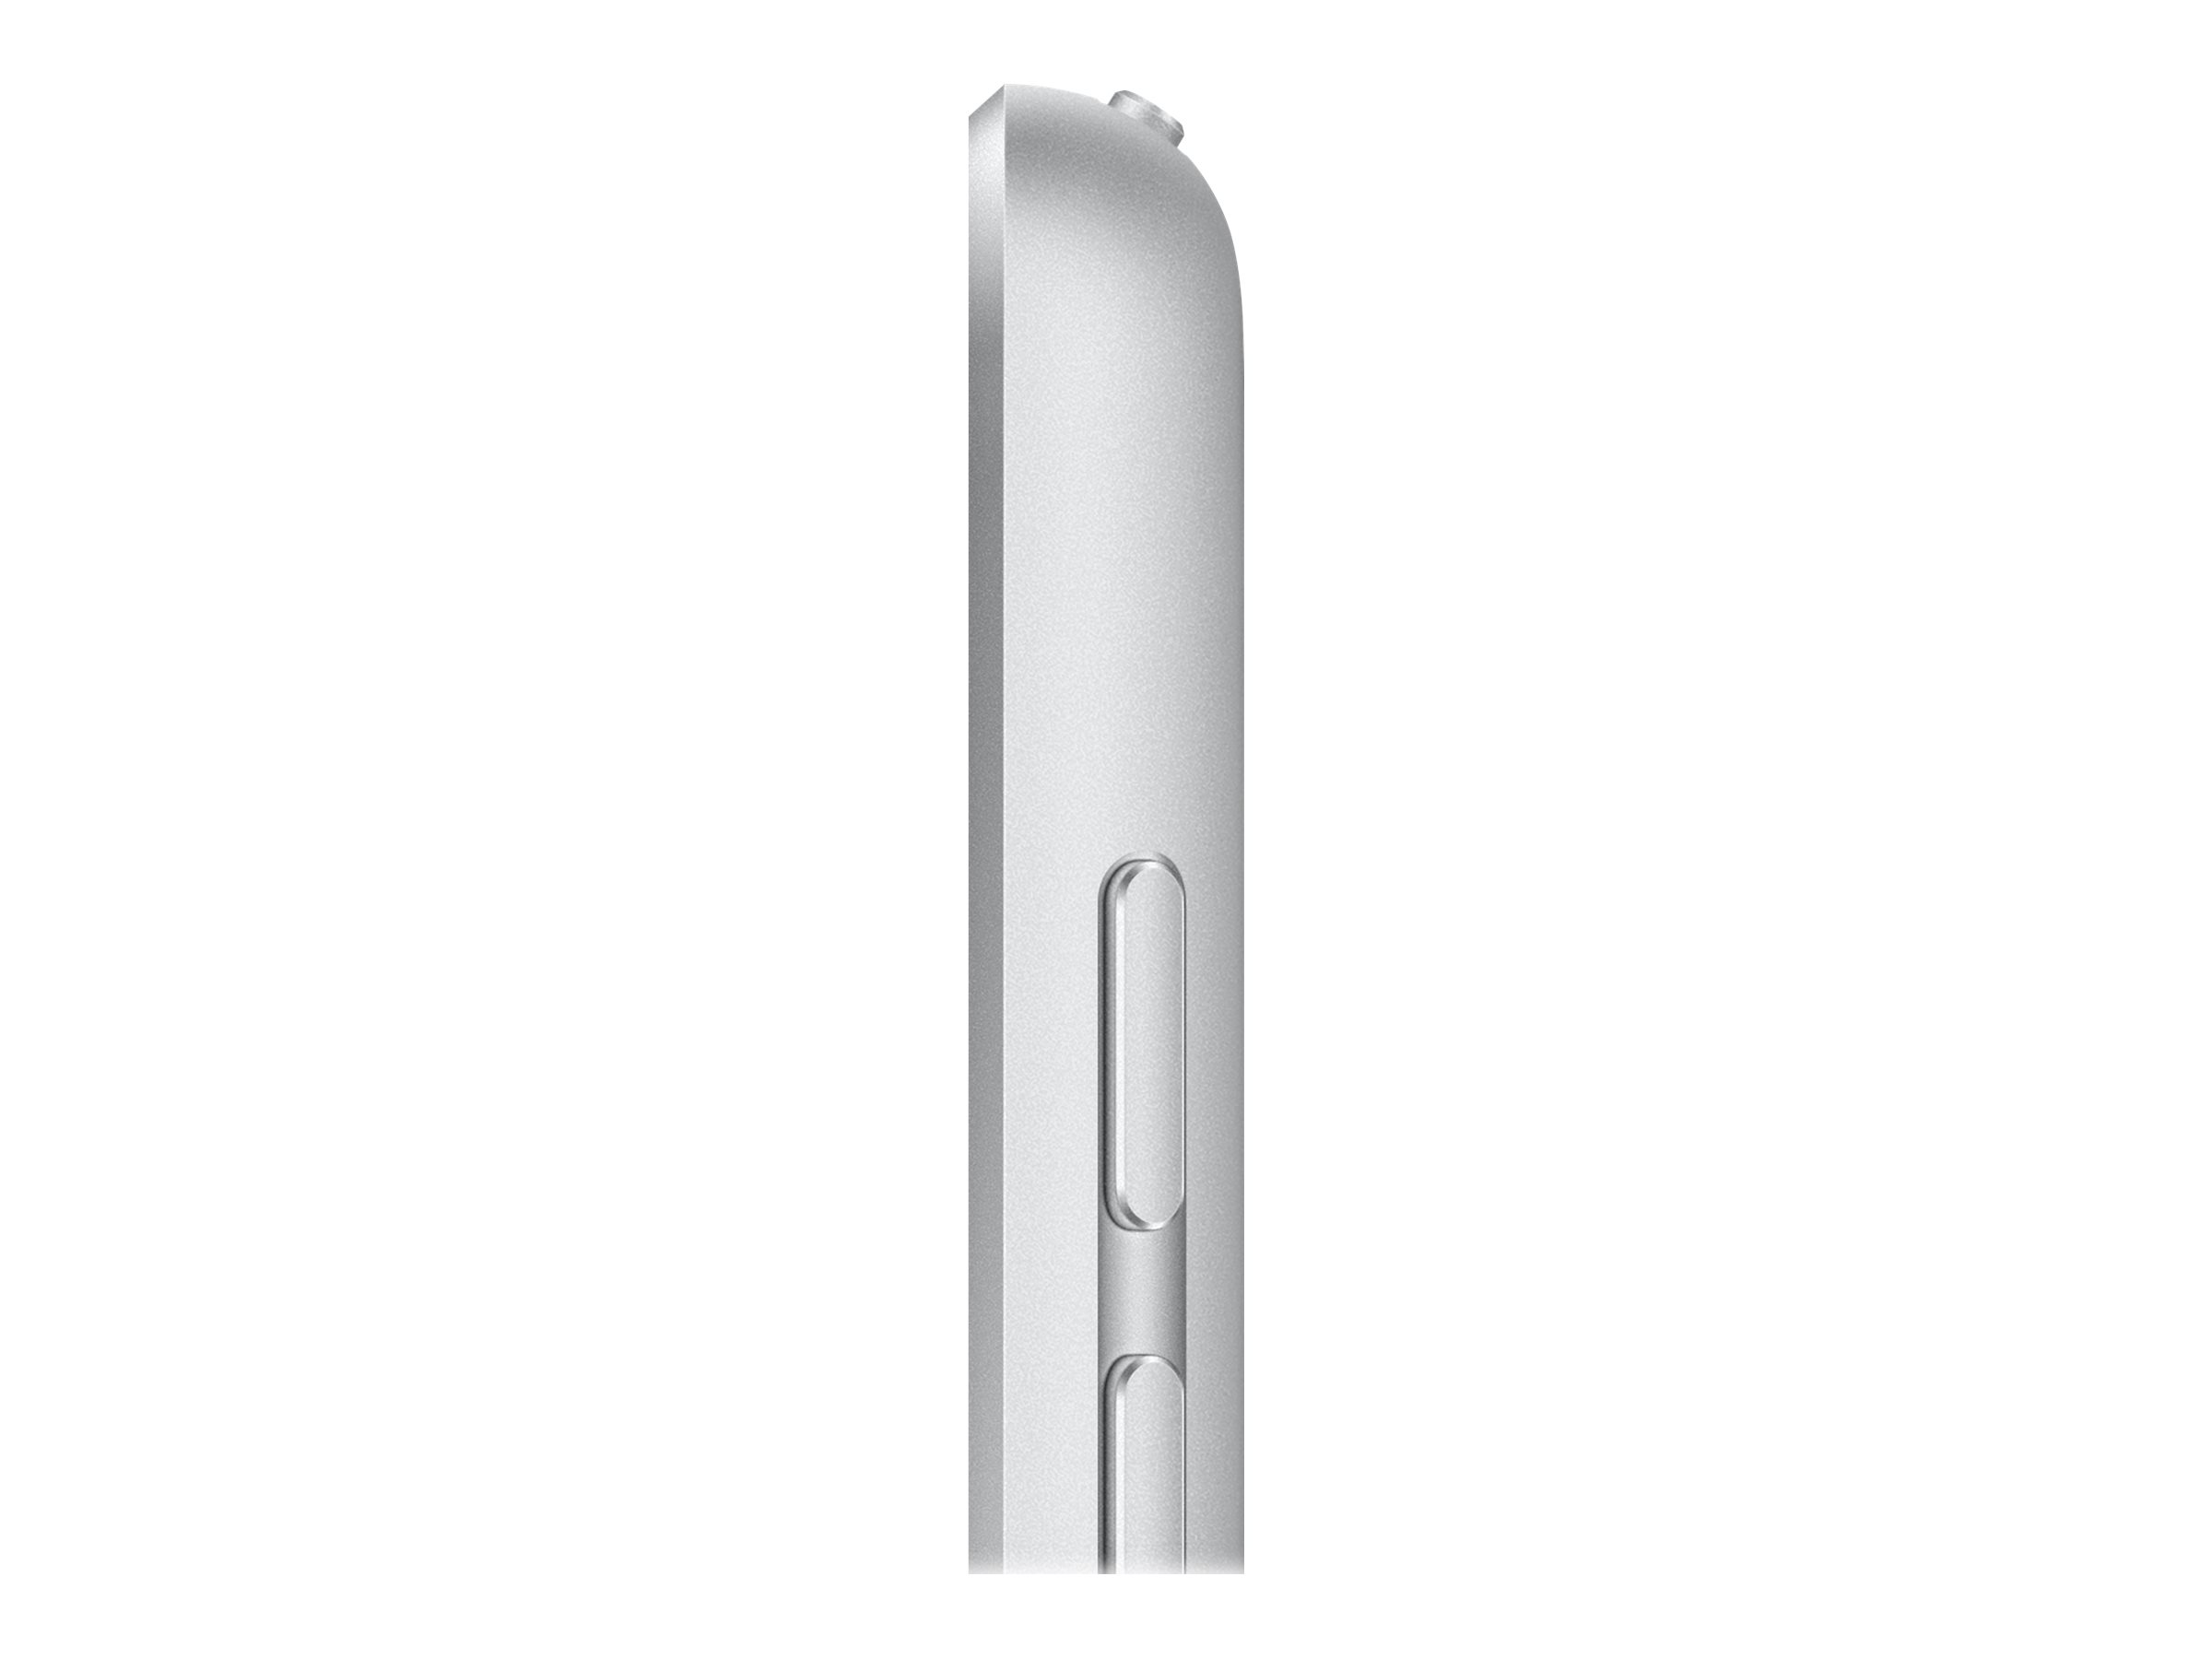 Apple iPad 10.2 (2021) Wi-Fi 64GB silver